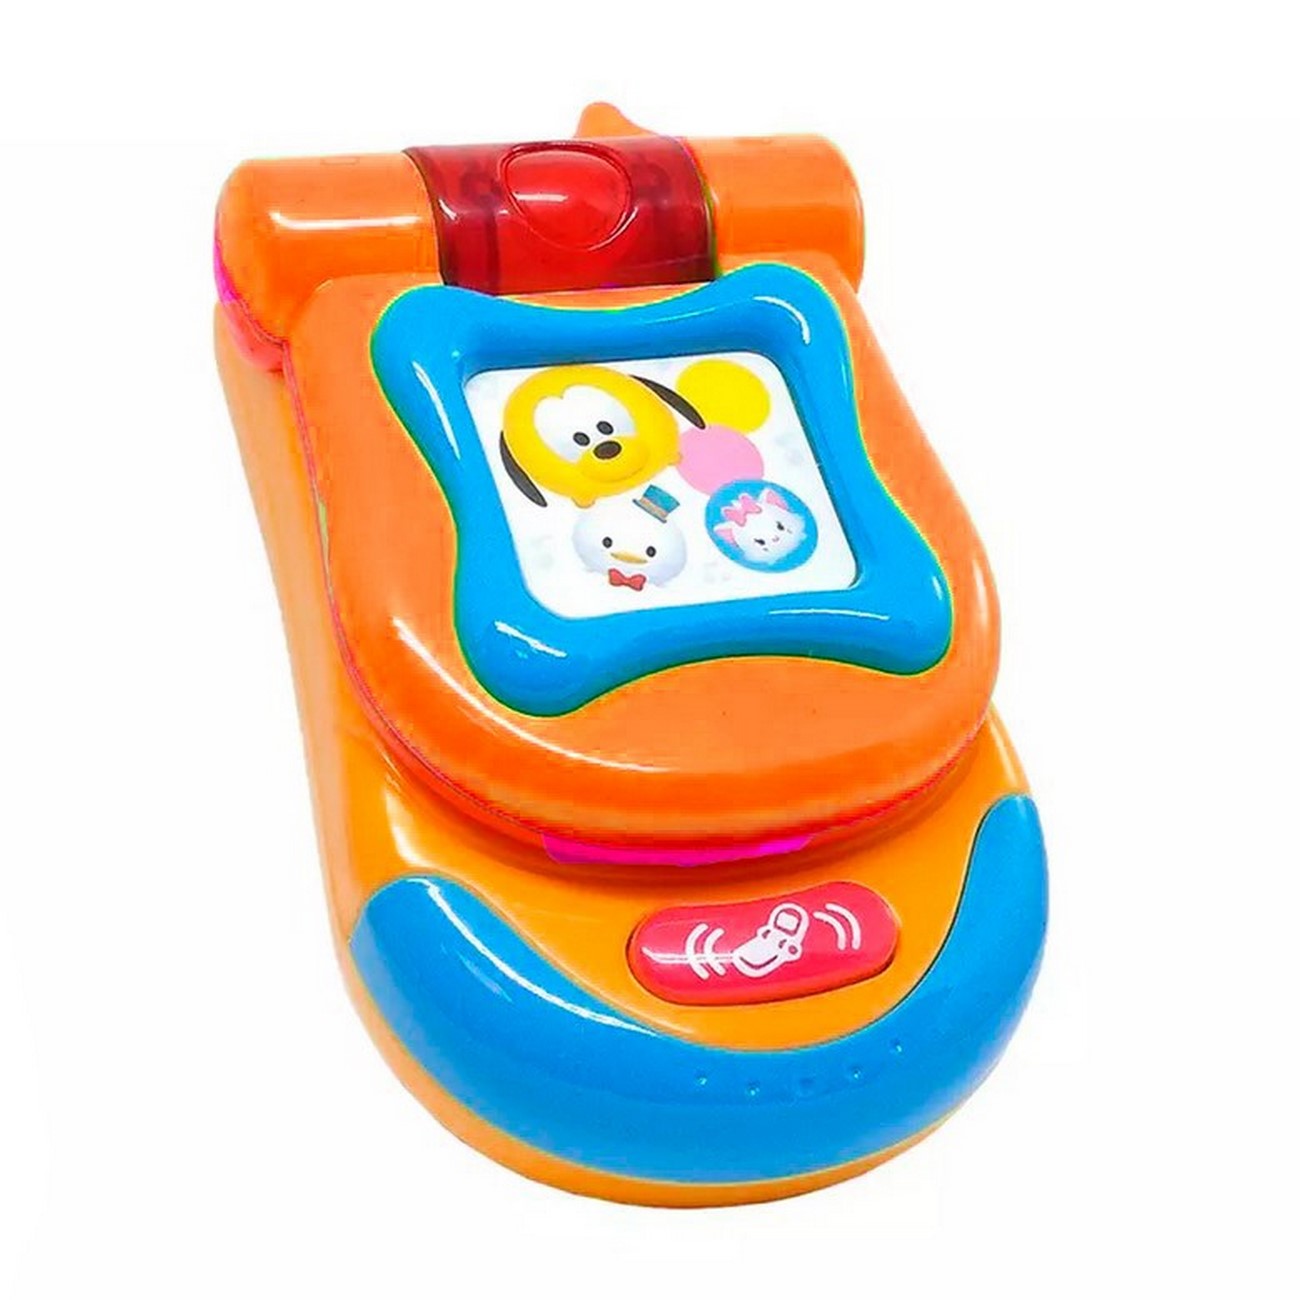 Teléfono Celular Pato Juguete Luces Bebe Niños + Baterias